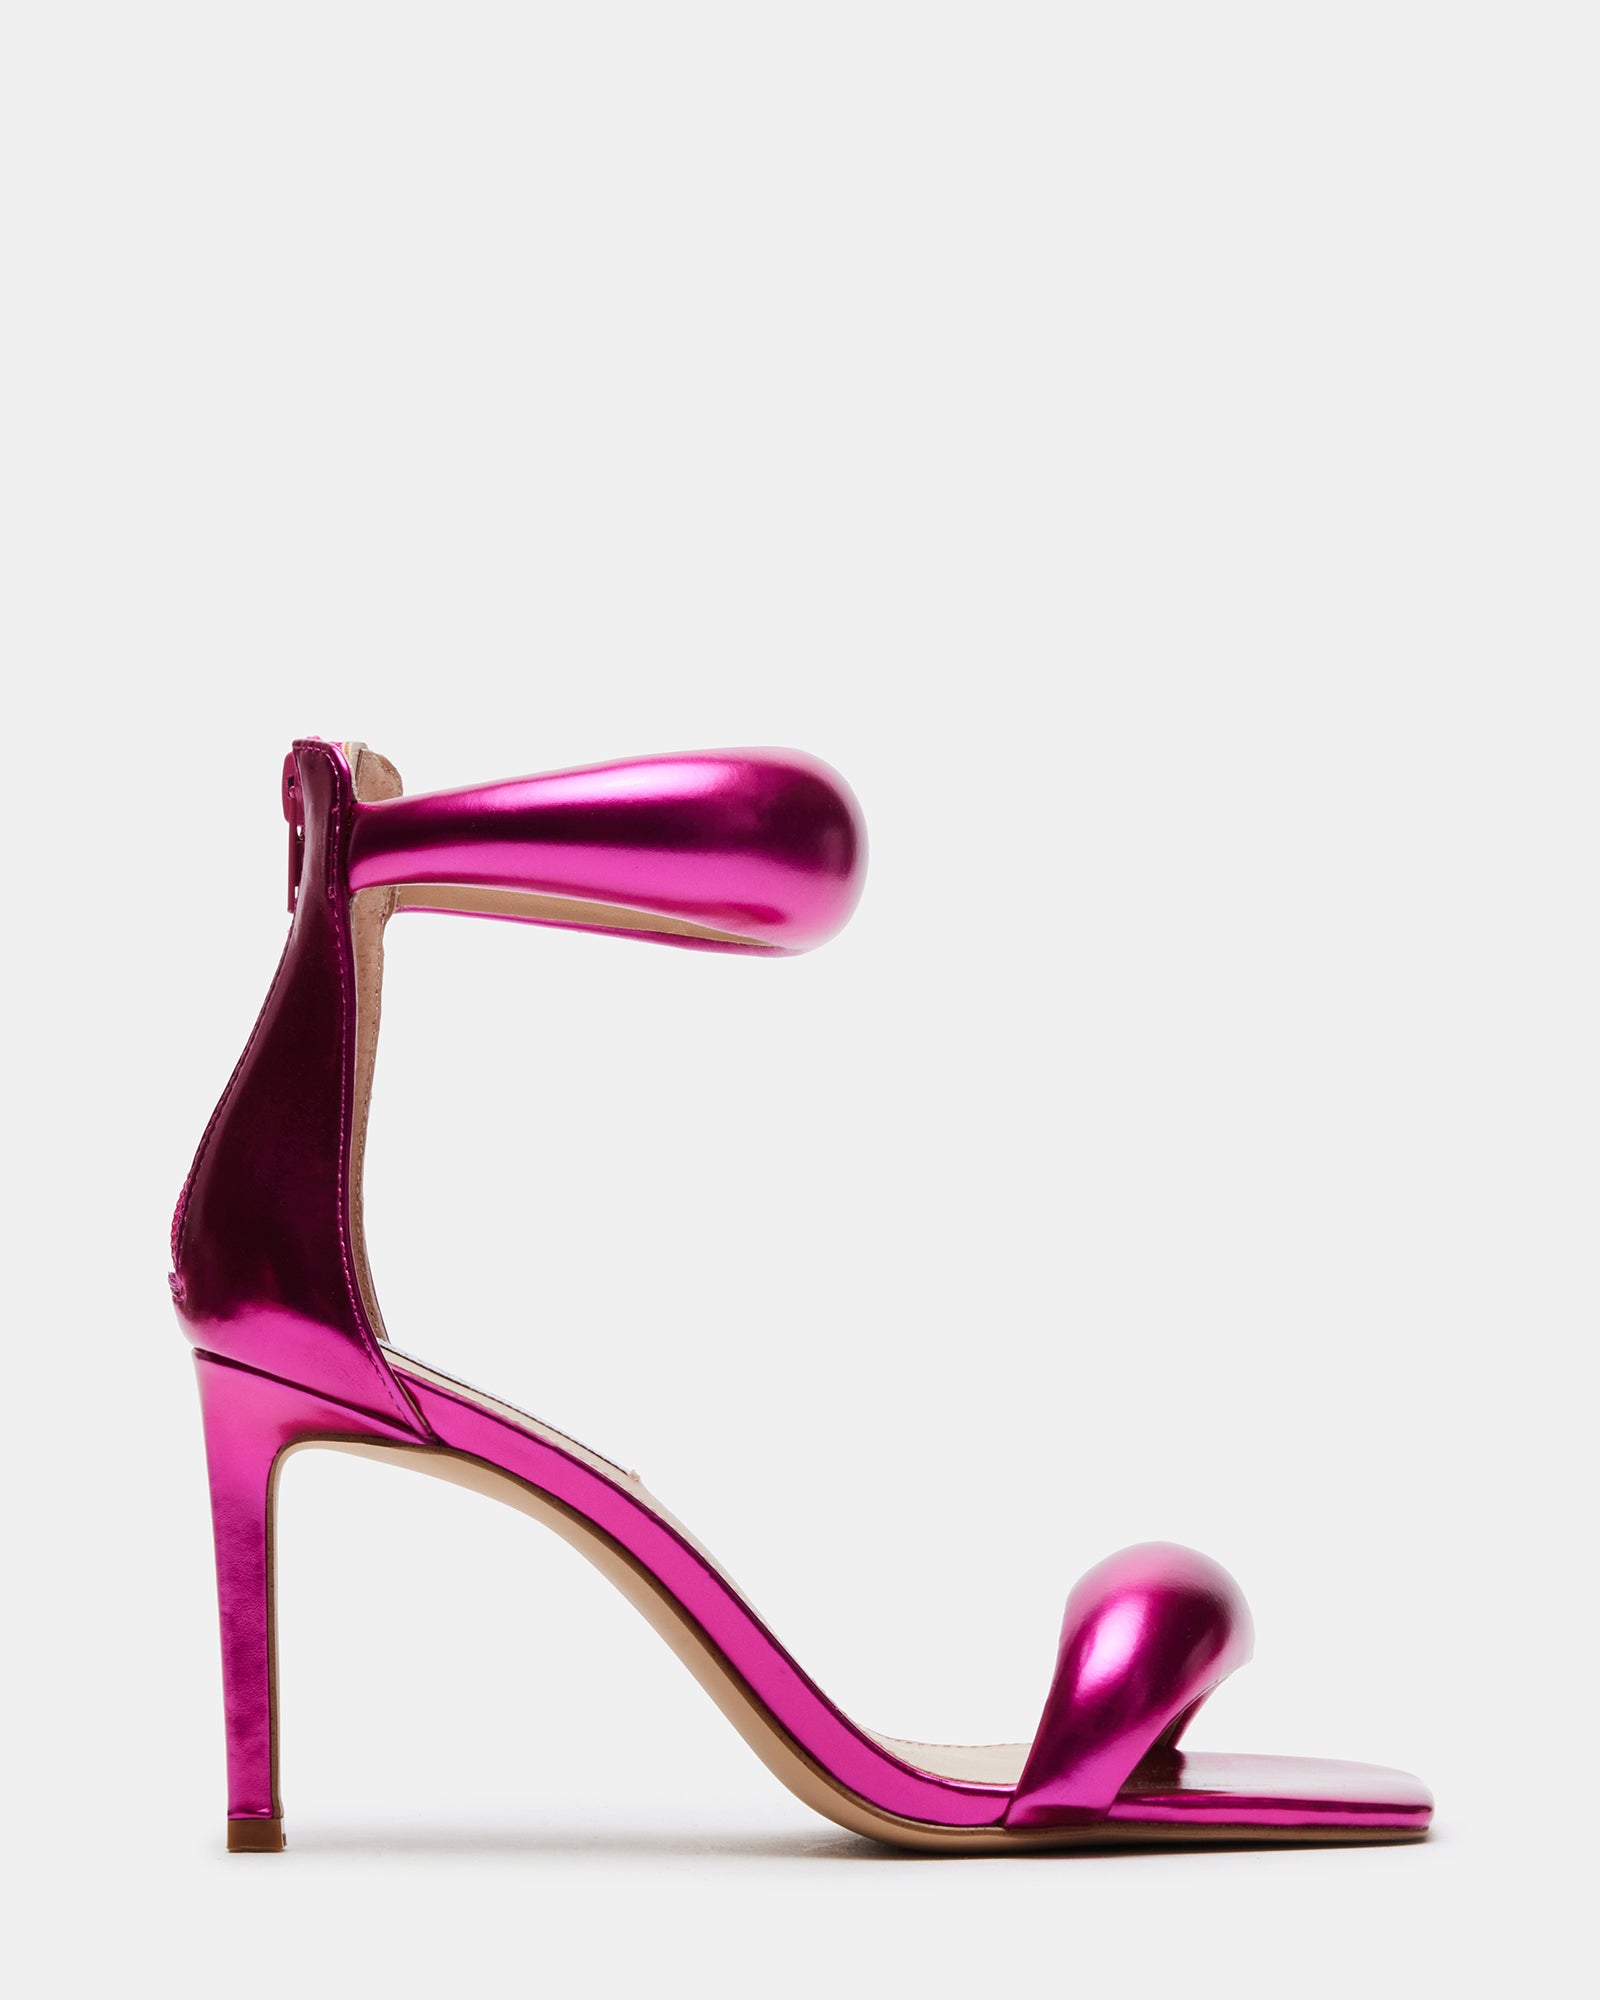 SKY-309UV Neon Hot Pink/Hot Pink Sandals – SHOE ME